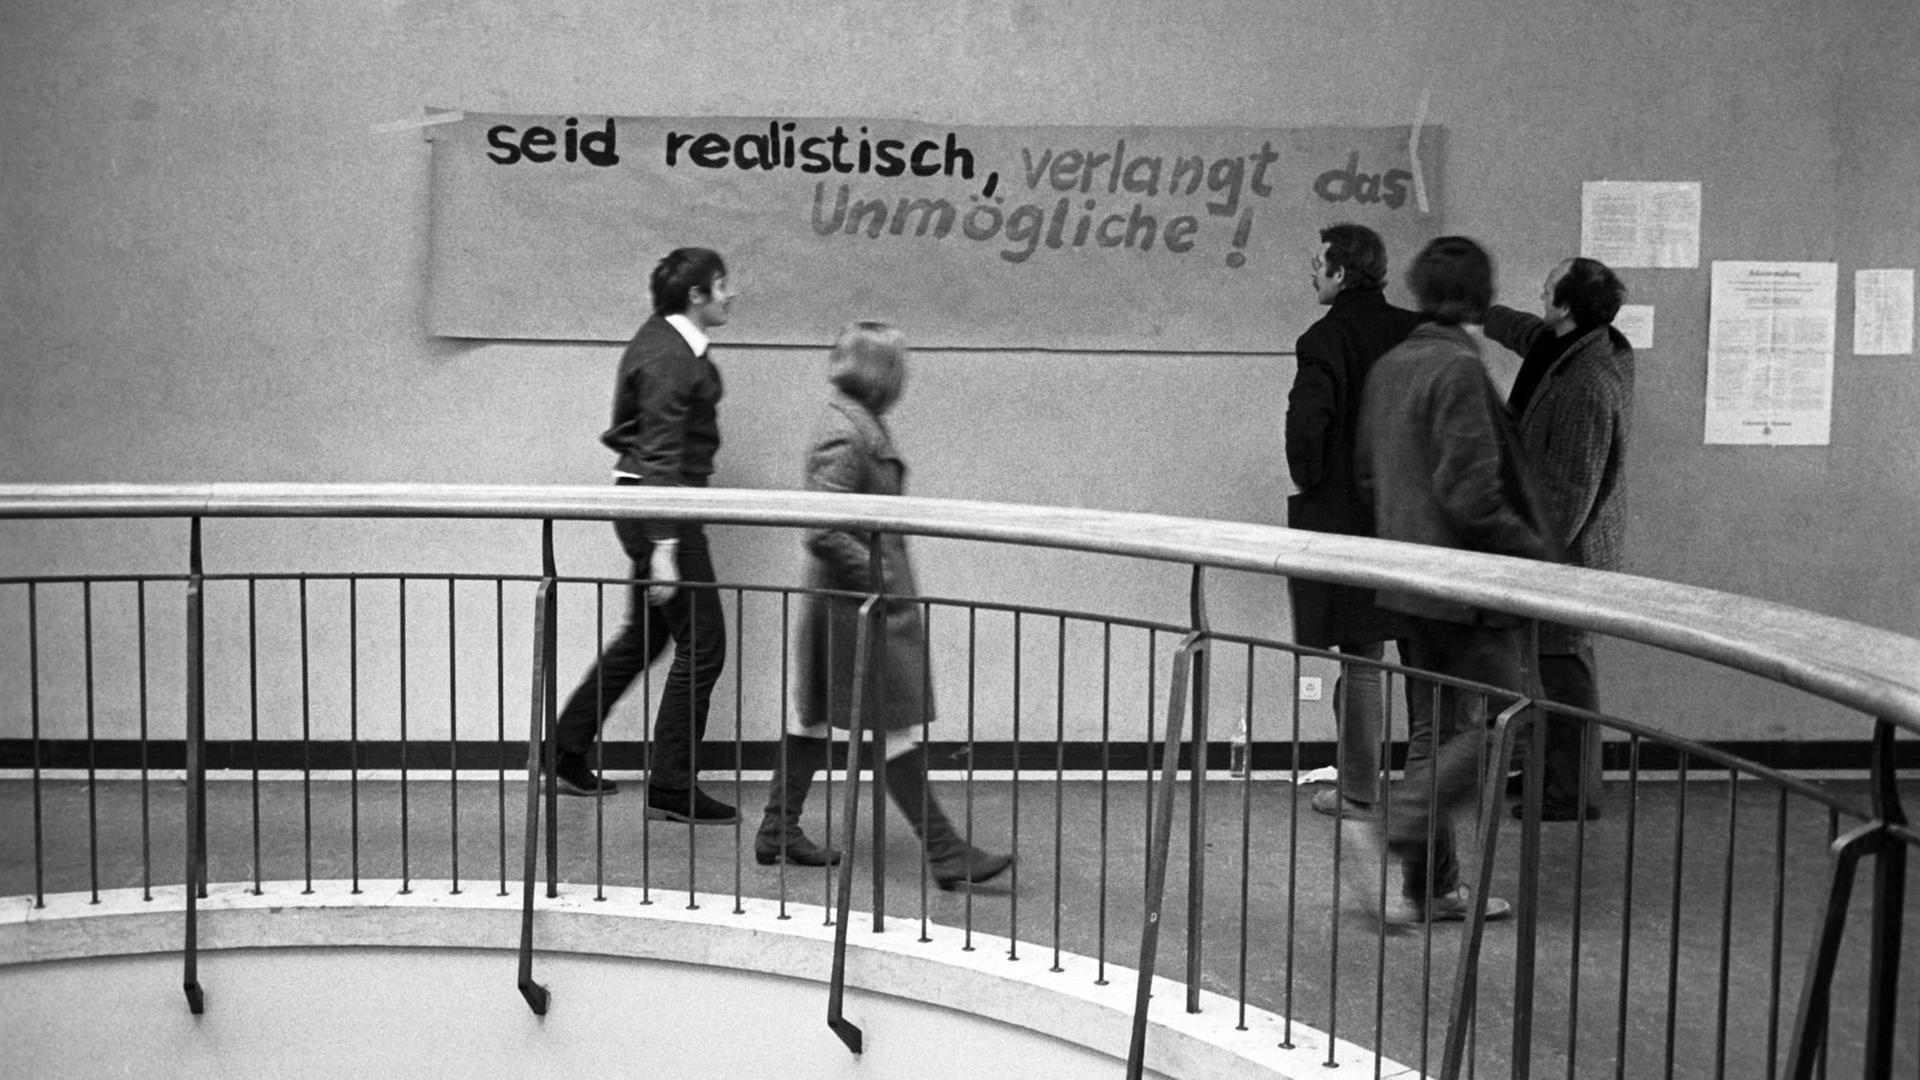 Studenten haben im Treppenhaus des Instituts ein Spruchband mit der Aufschrift "Seid realistisch verlangt das Unmögliche" aufgehängt.